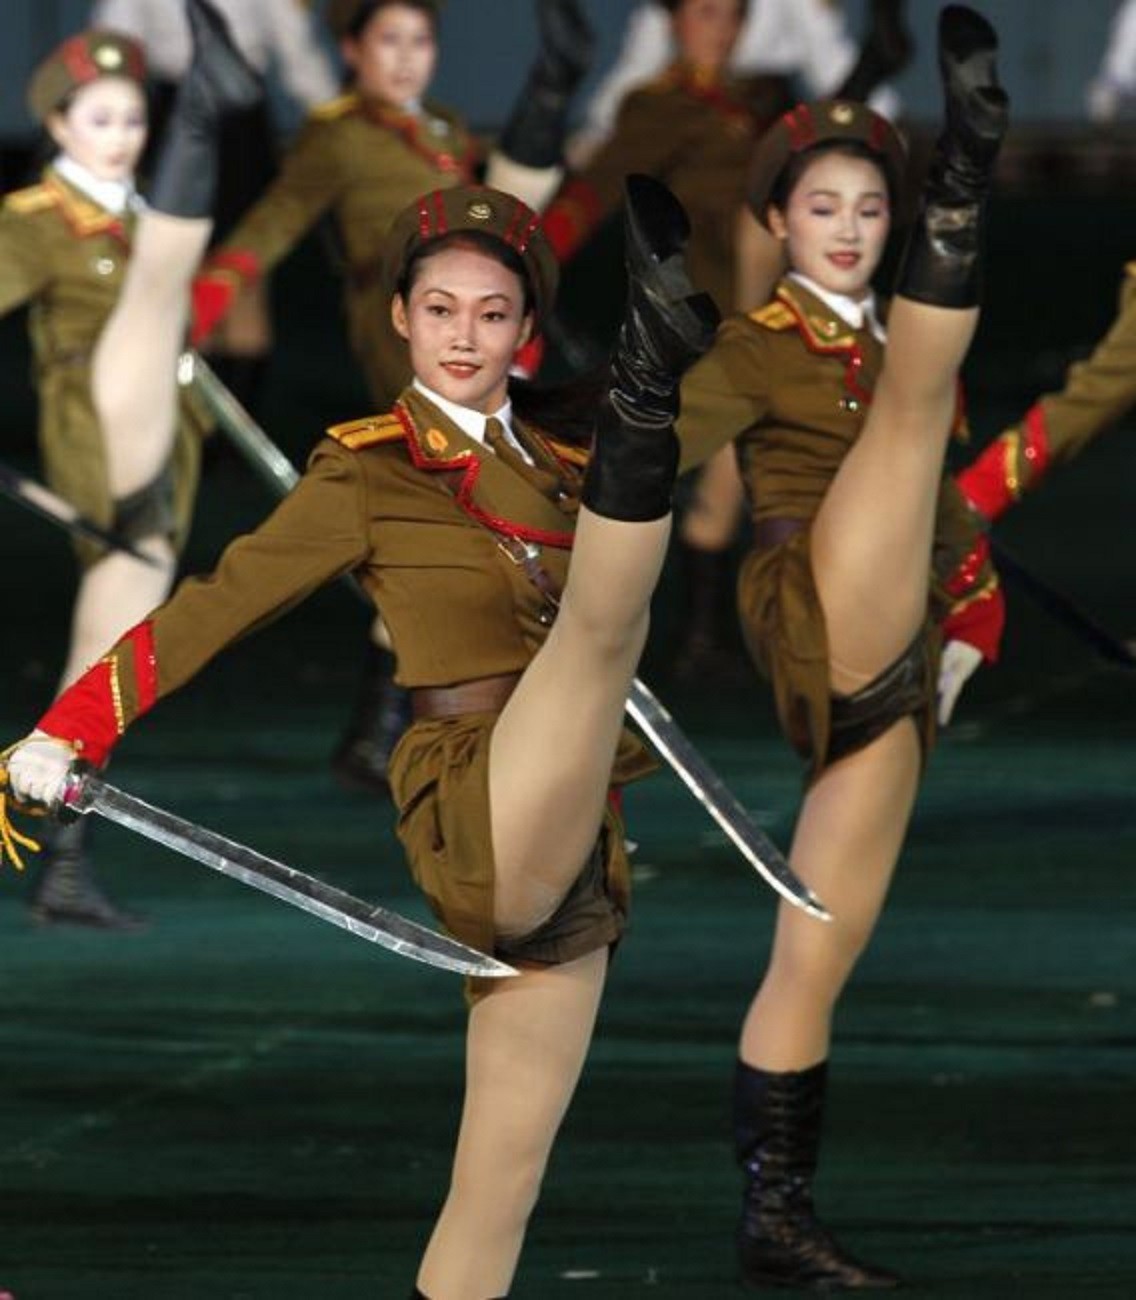 North Korean girls in uniform.